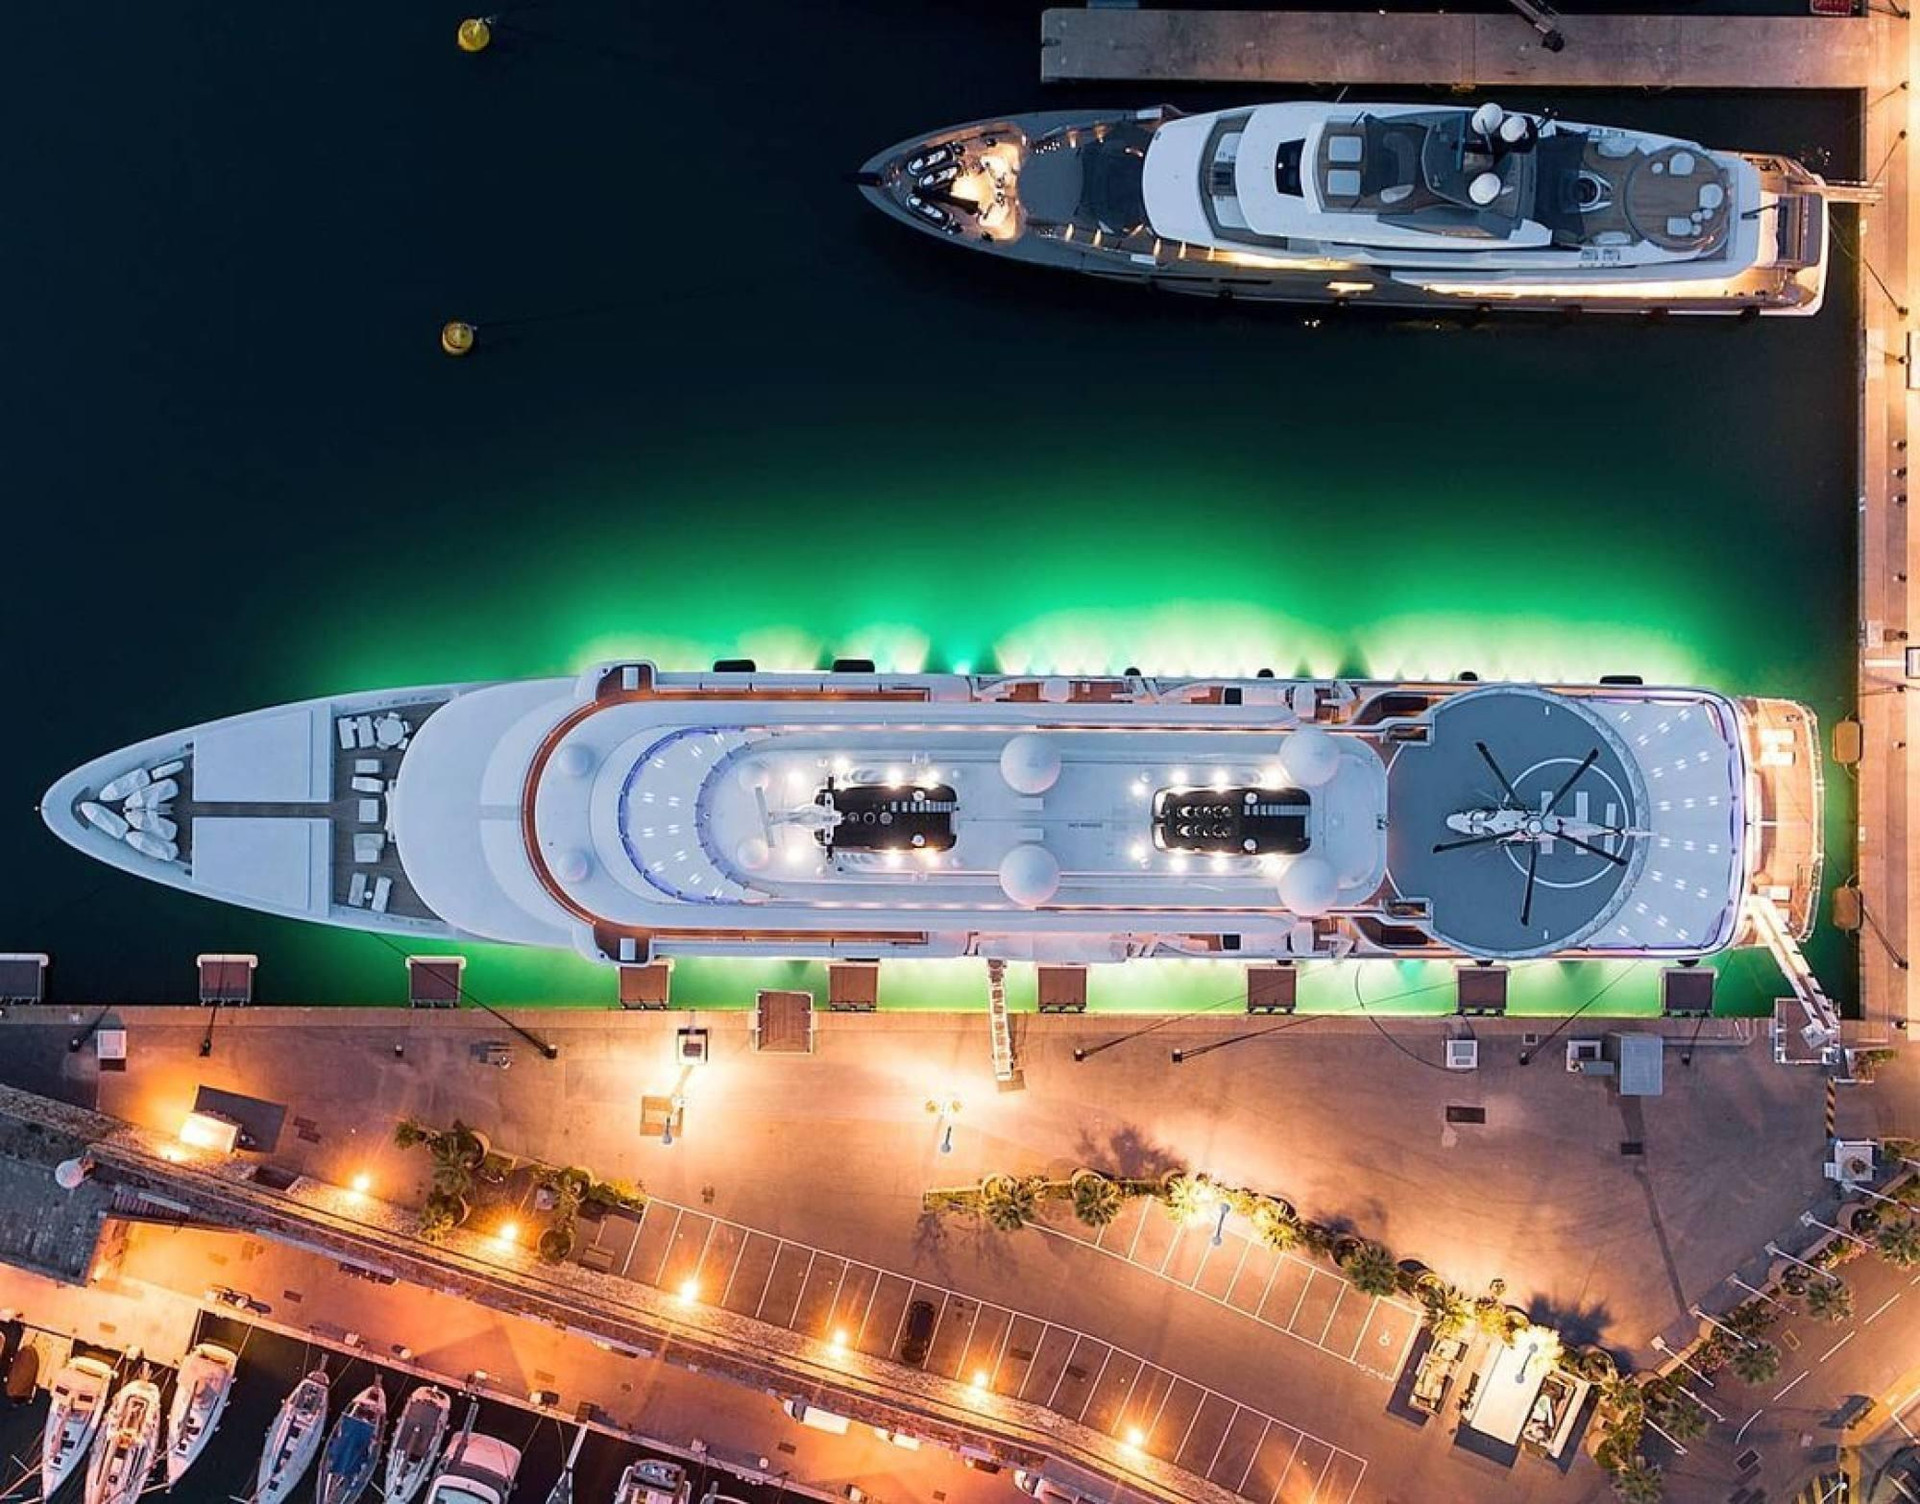 比卡塔爾世界盃體育場還大的超級遊艇 - 6